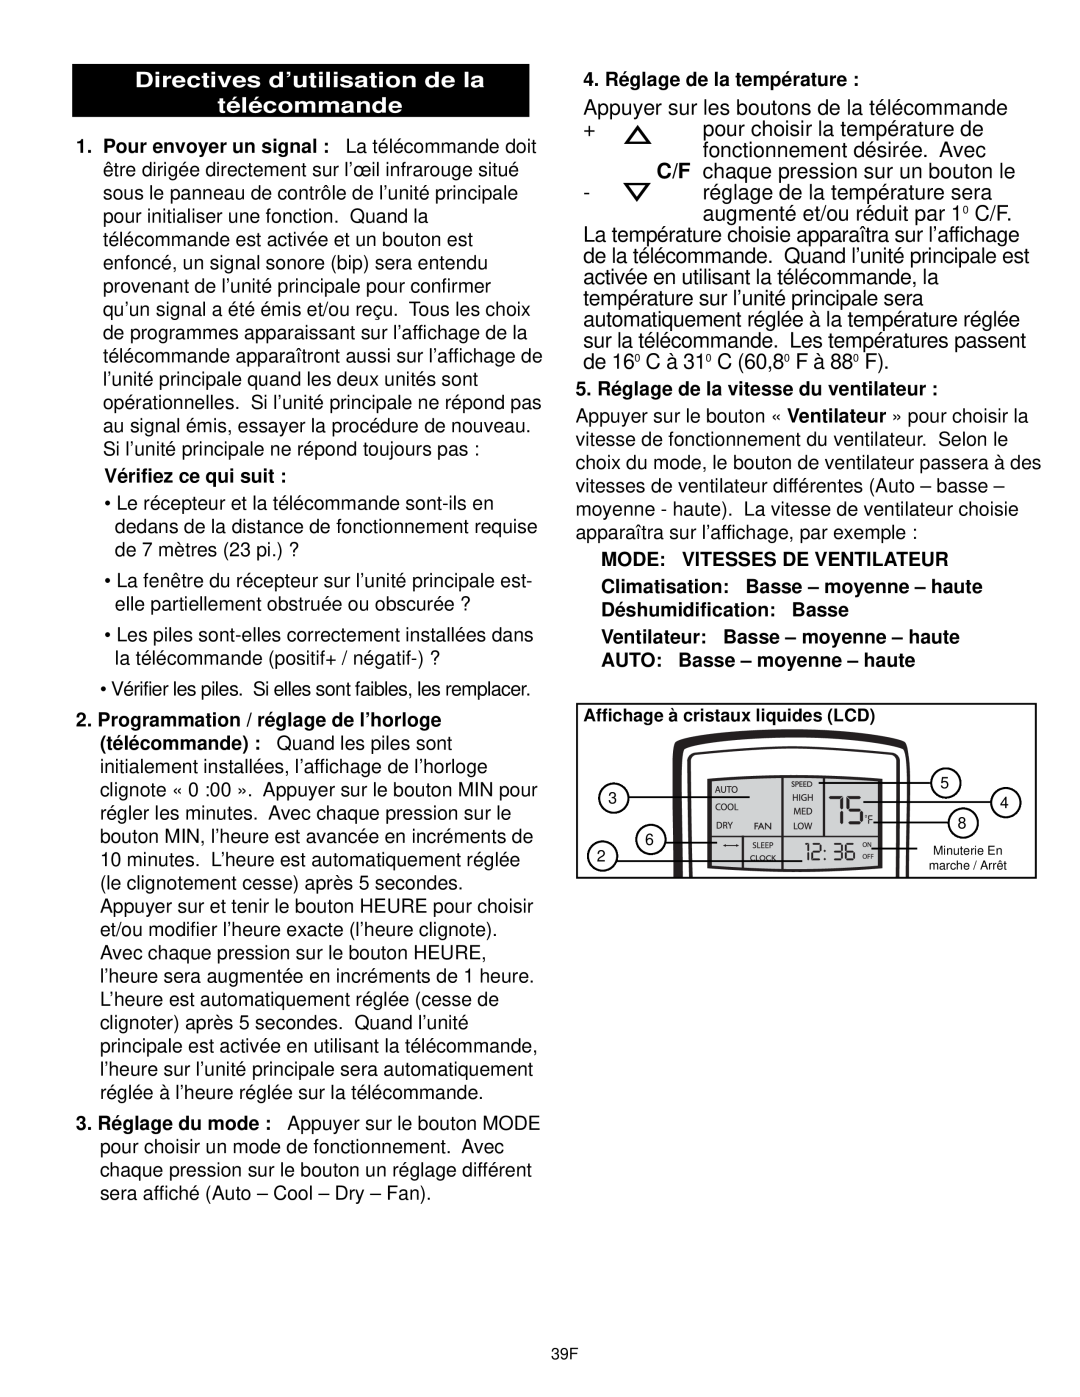 Danby DPAC9030, DCAP 12030 manual Directives d’utilisation de la télécommande 